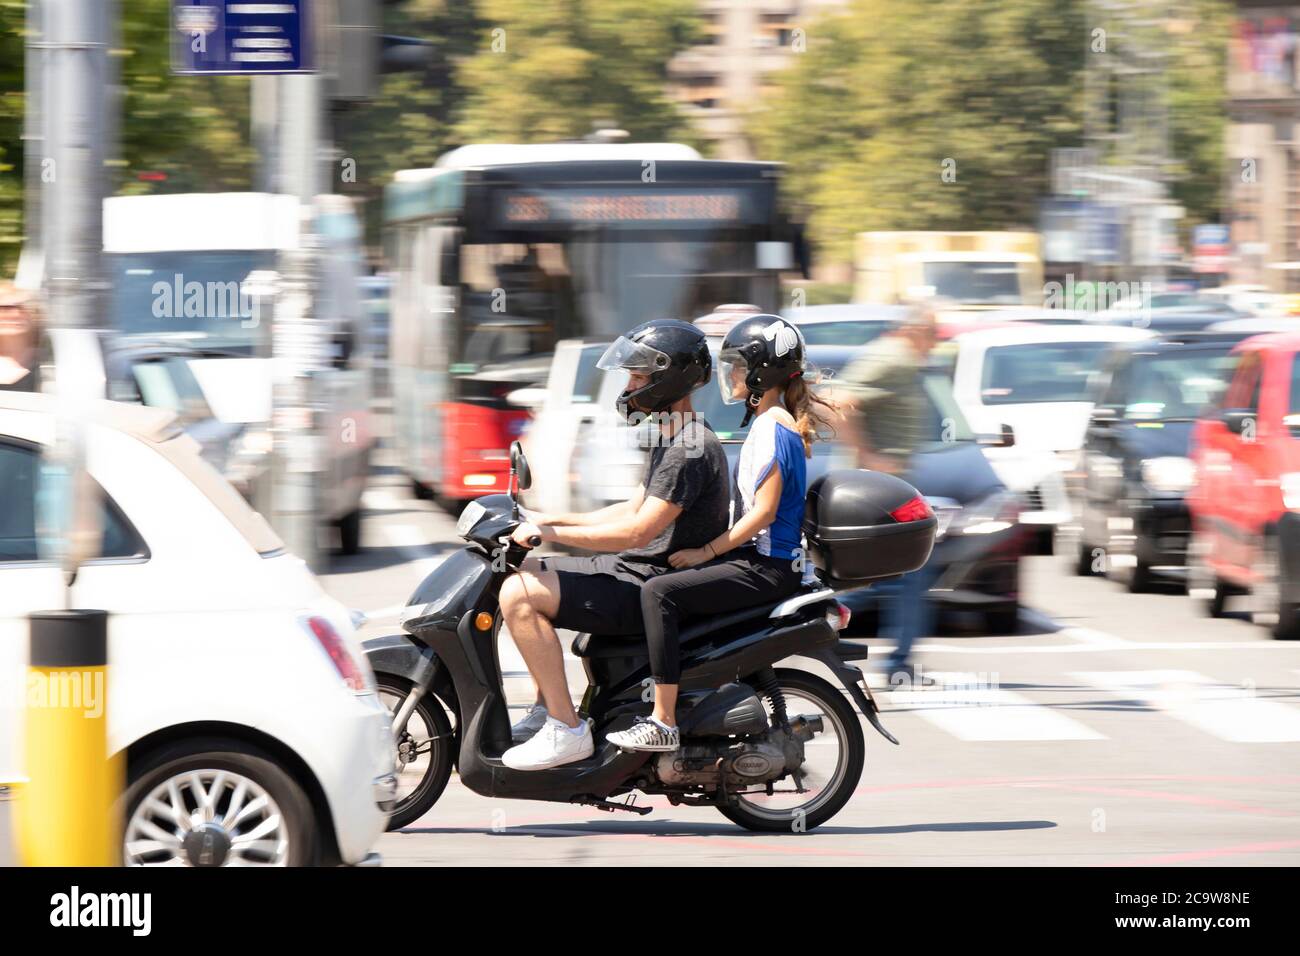 Belgrad, Serbien - 21. Juli 2020: Junges Paar auf einem Roller vespa Motorrad im belebten Stadtverkehr, auf der Kreuzung mit Menschen und Autos Stockfoto